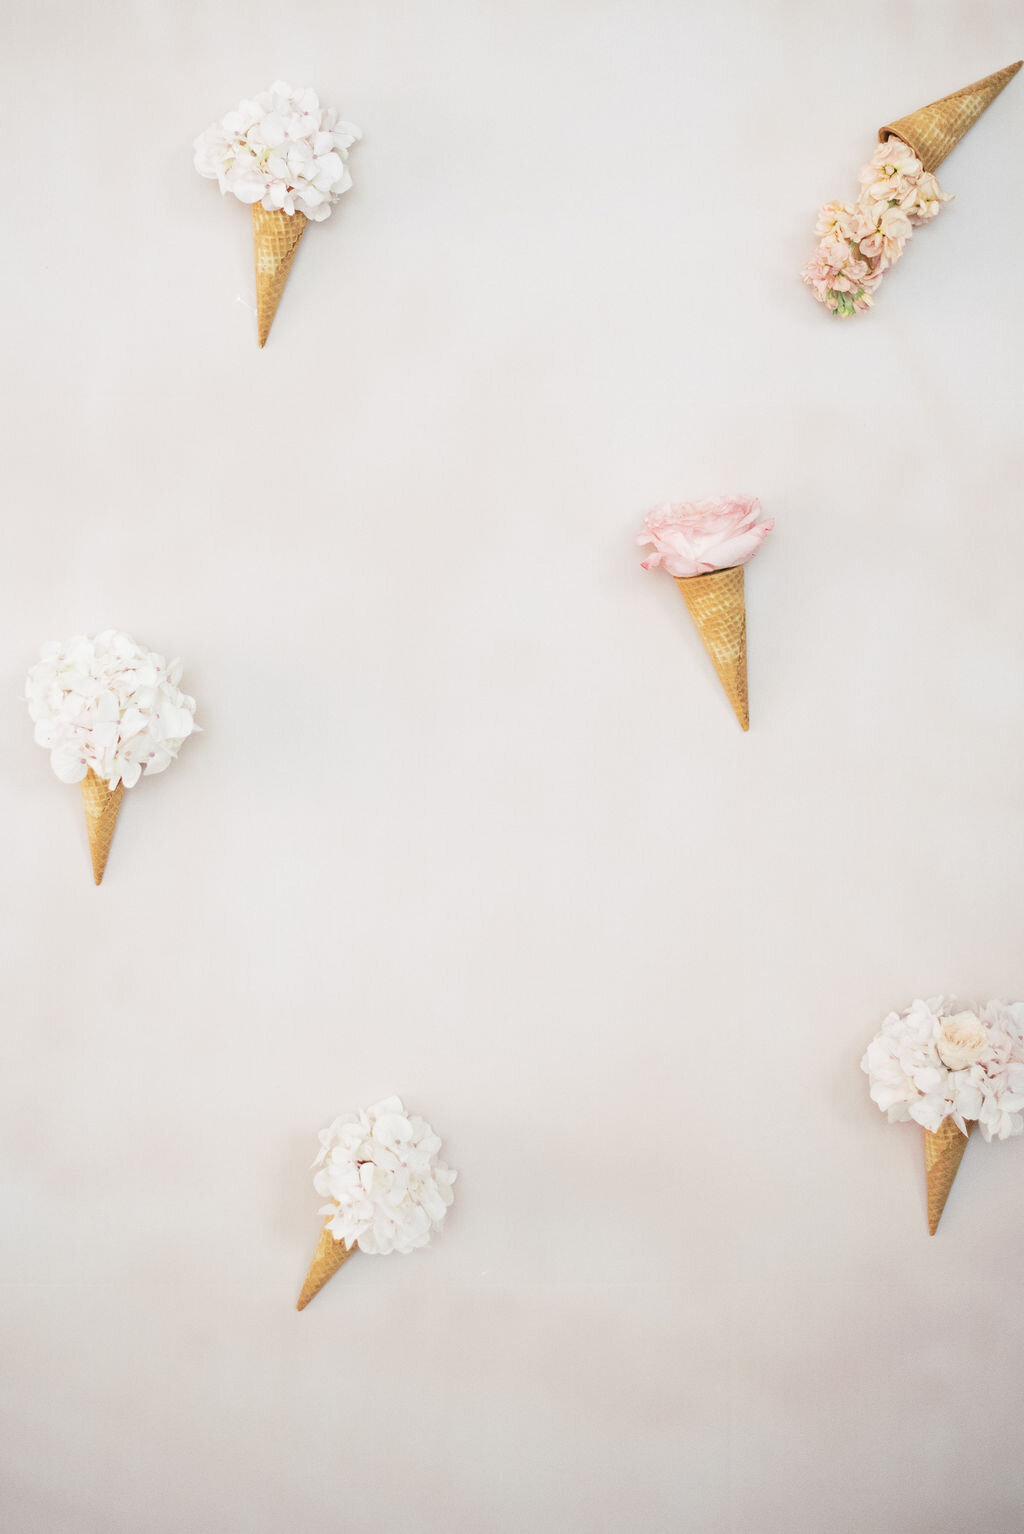 ice cream cones with florals